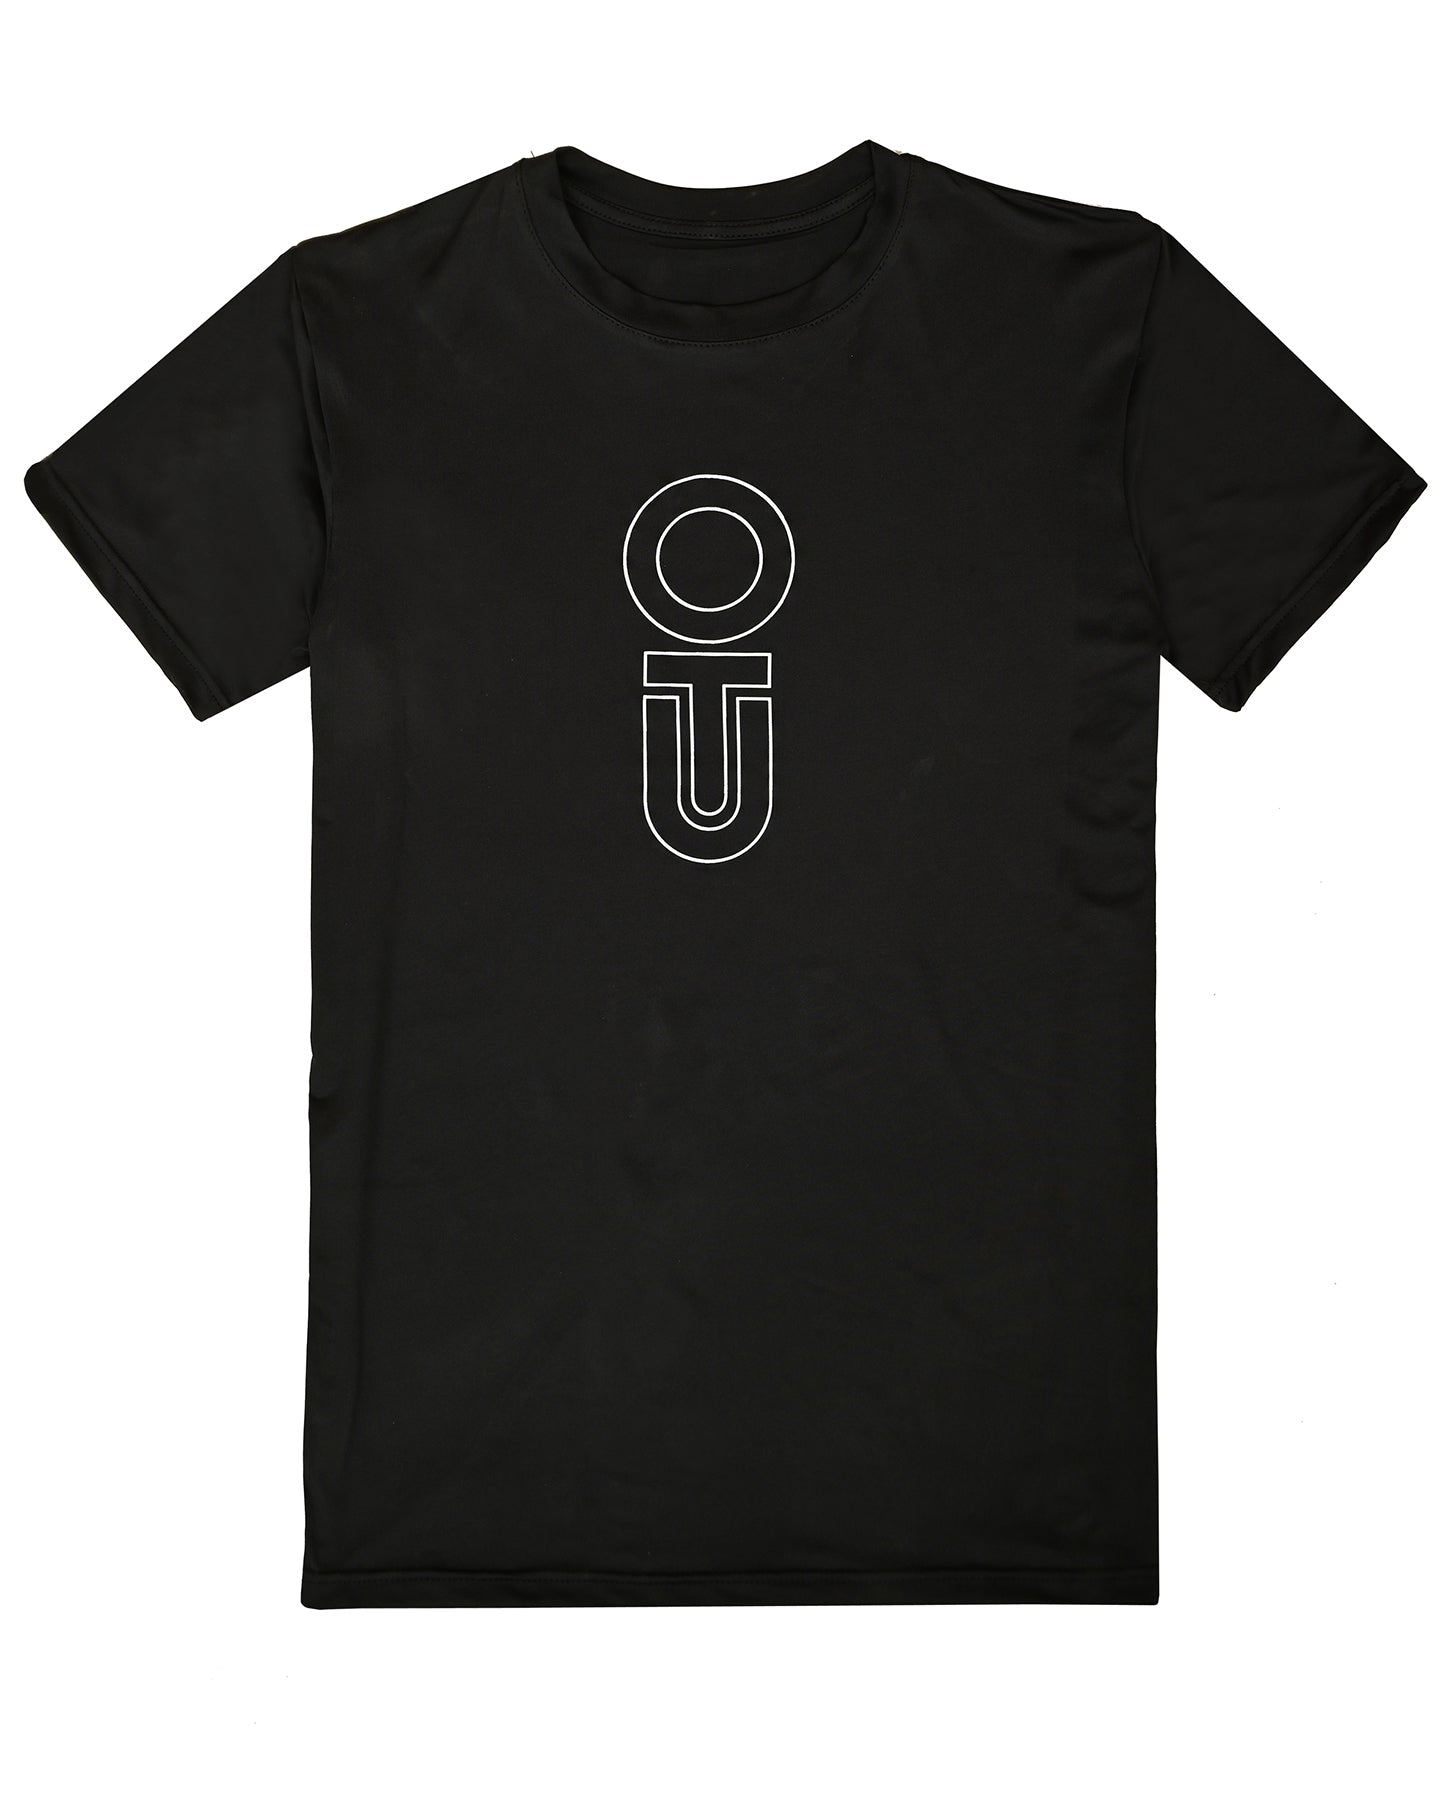 Outters Men Black Dri-Fit Short-Sleeve Crewneck T shirt